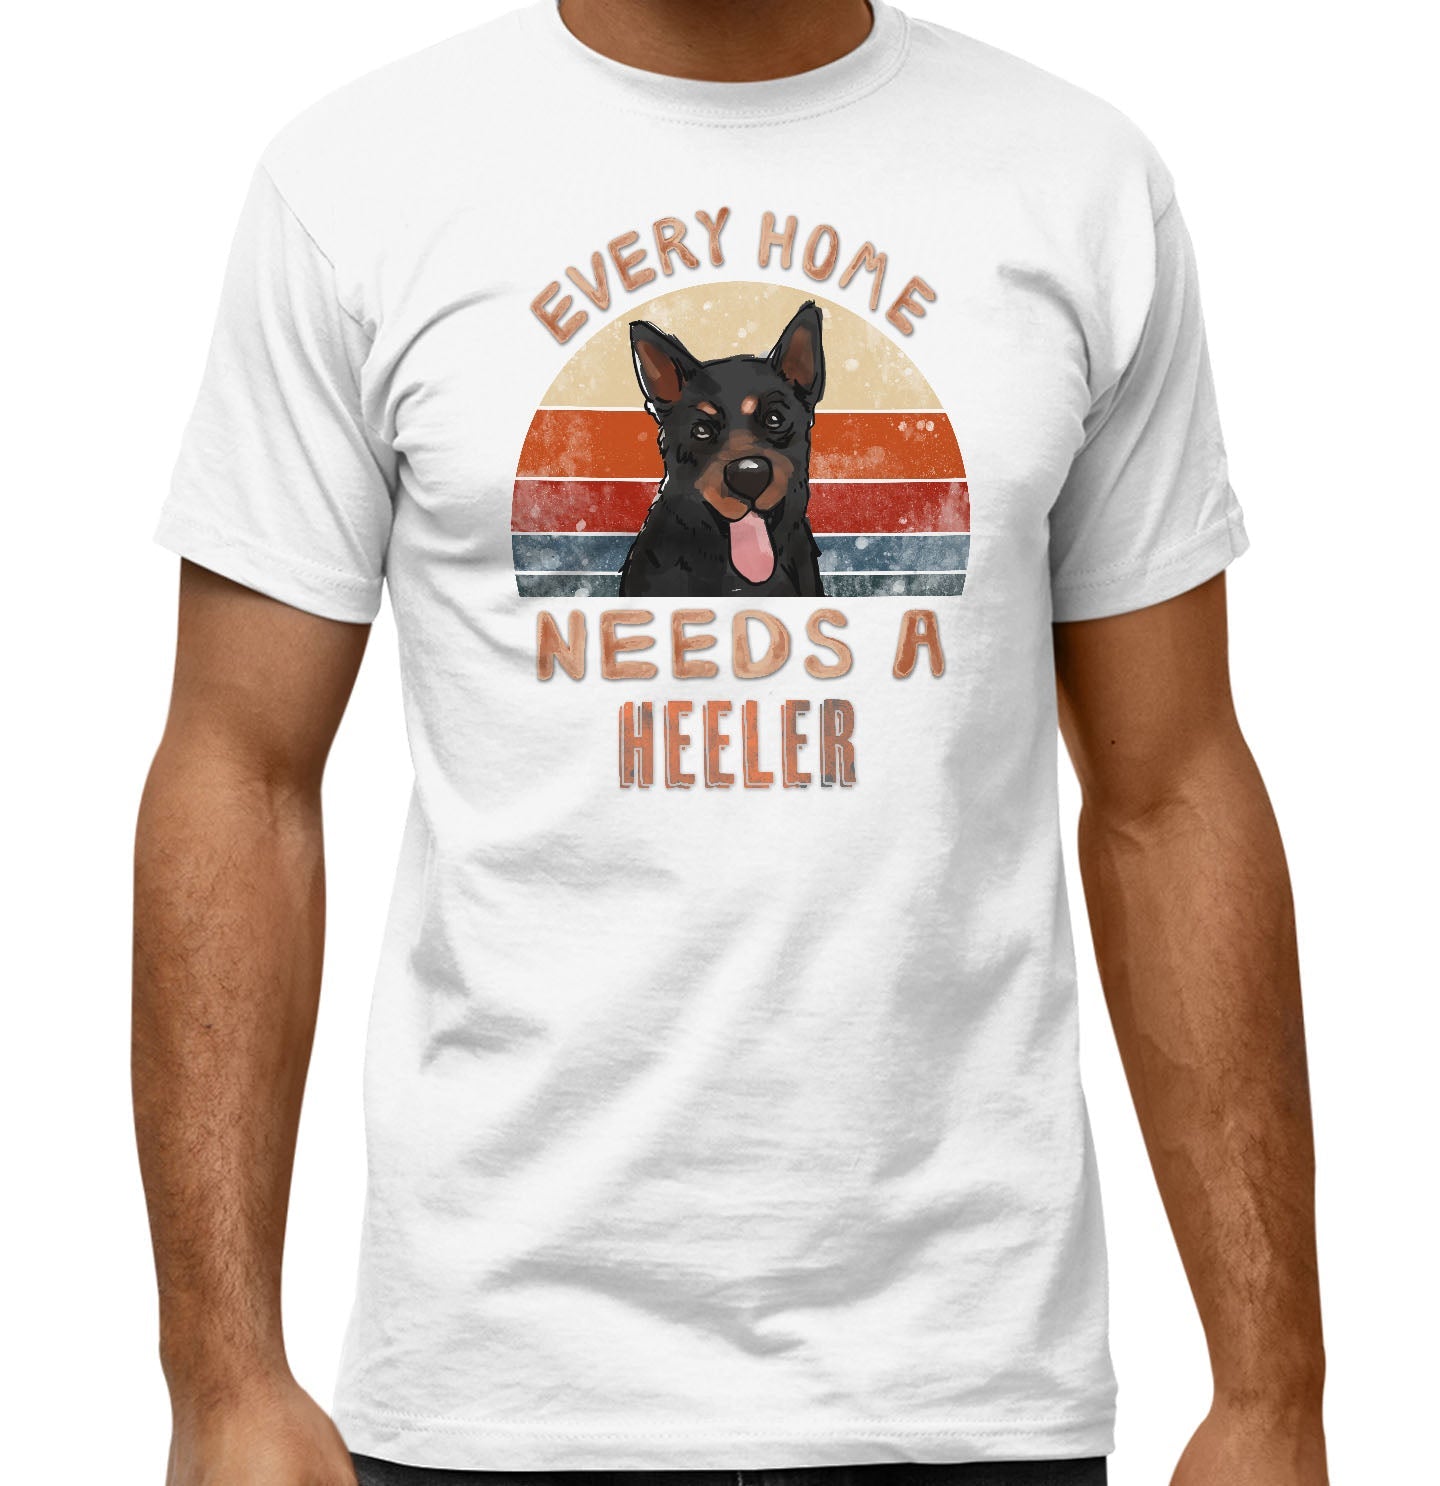 Every Home Needs a Lancashire Heeler - Adult Unisex T-Shirt